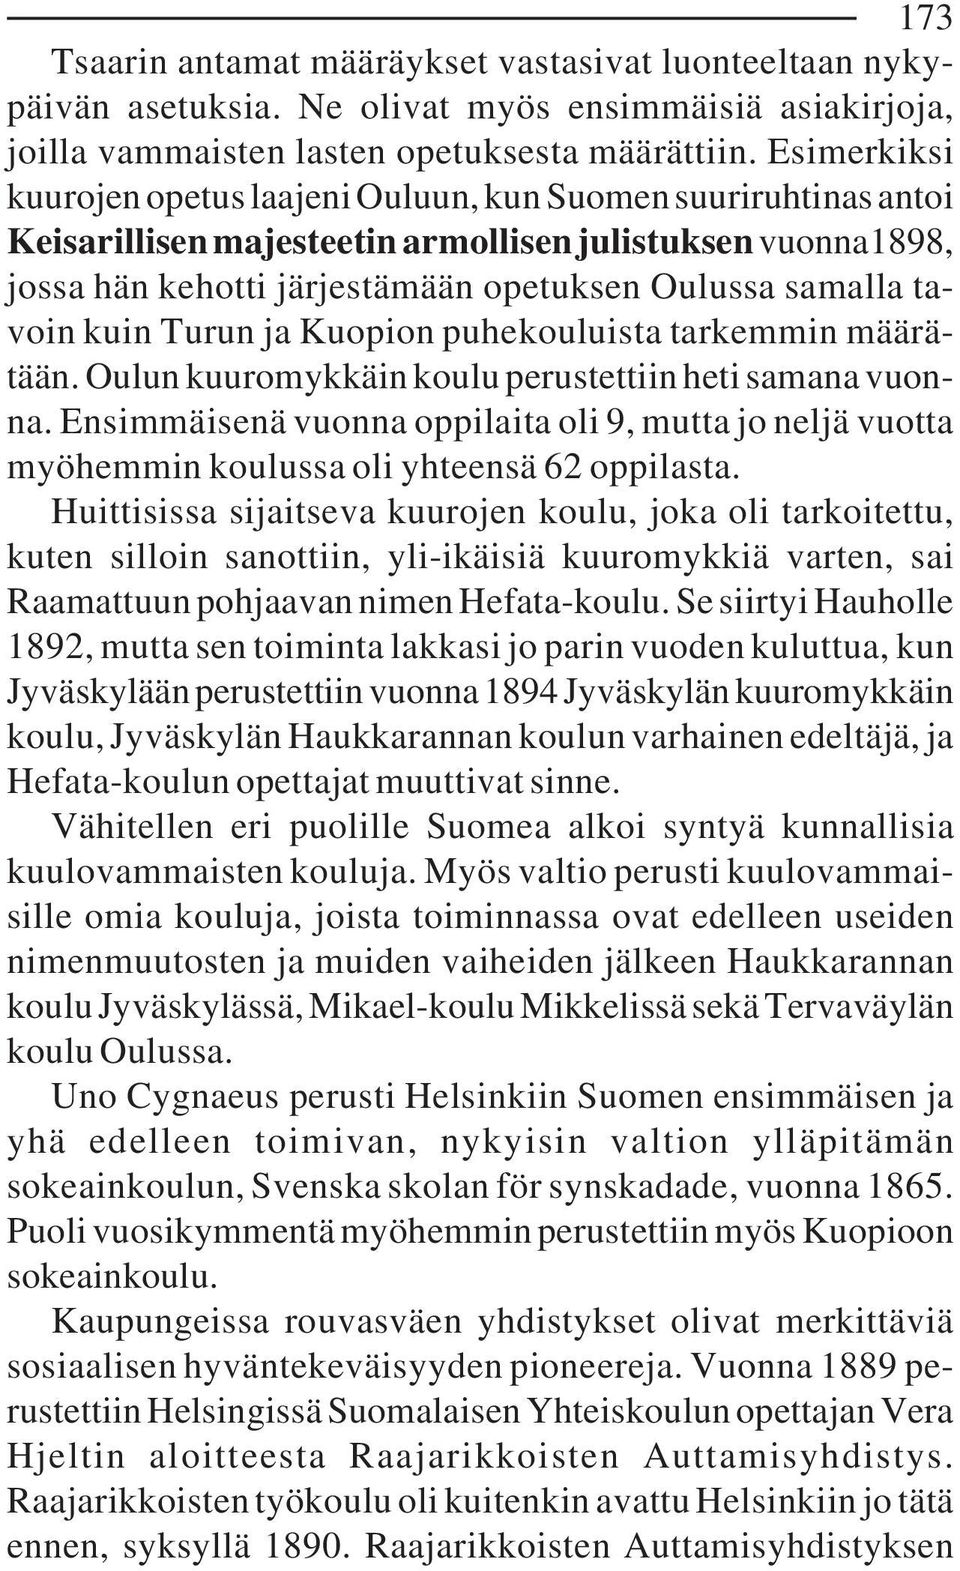 kuin Turun ja Kuopion puhekouluista tarkemmin määrätään. Oulun kuuromykkäin koulu perustettiin heti samana vuonna.